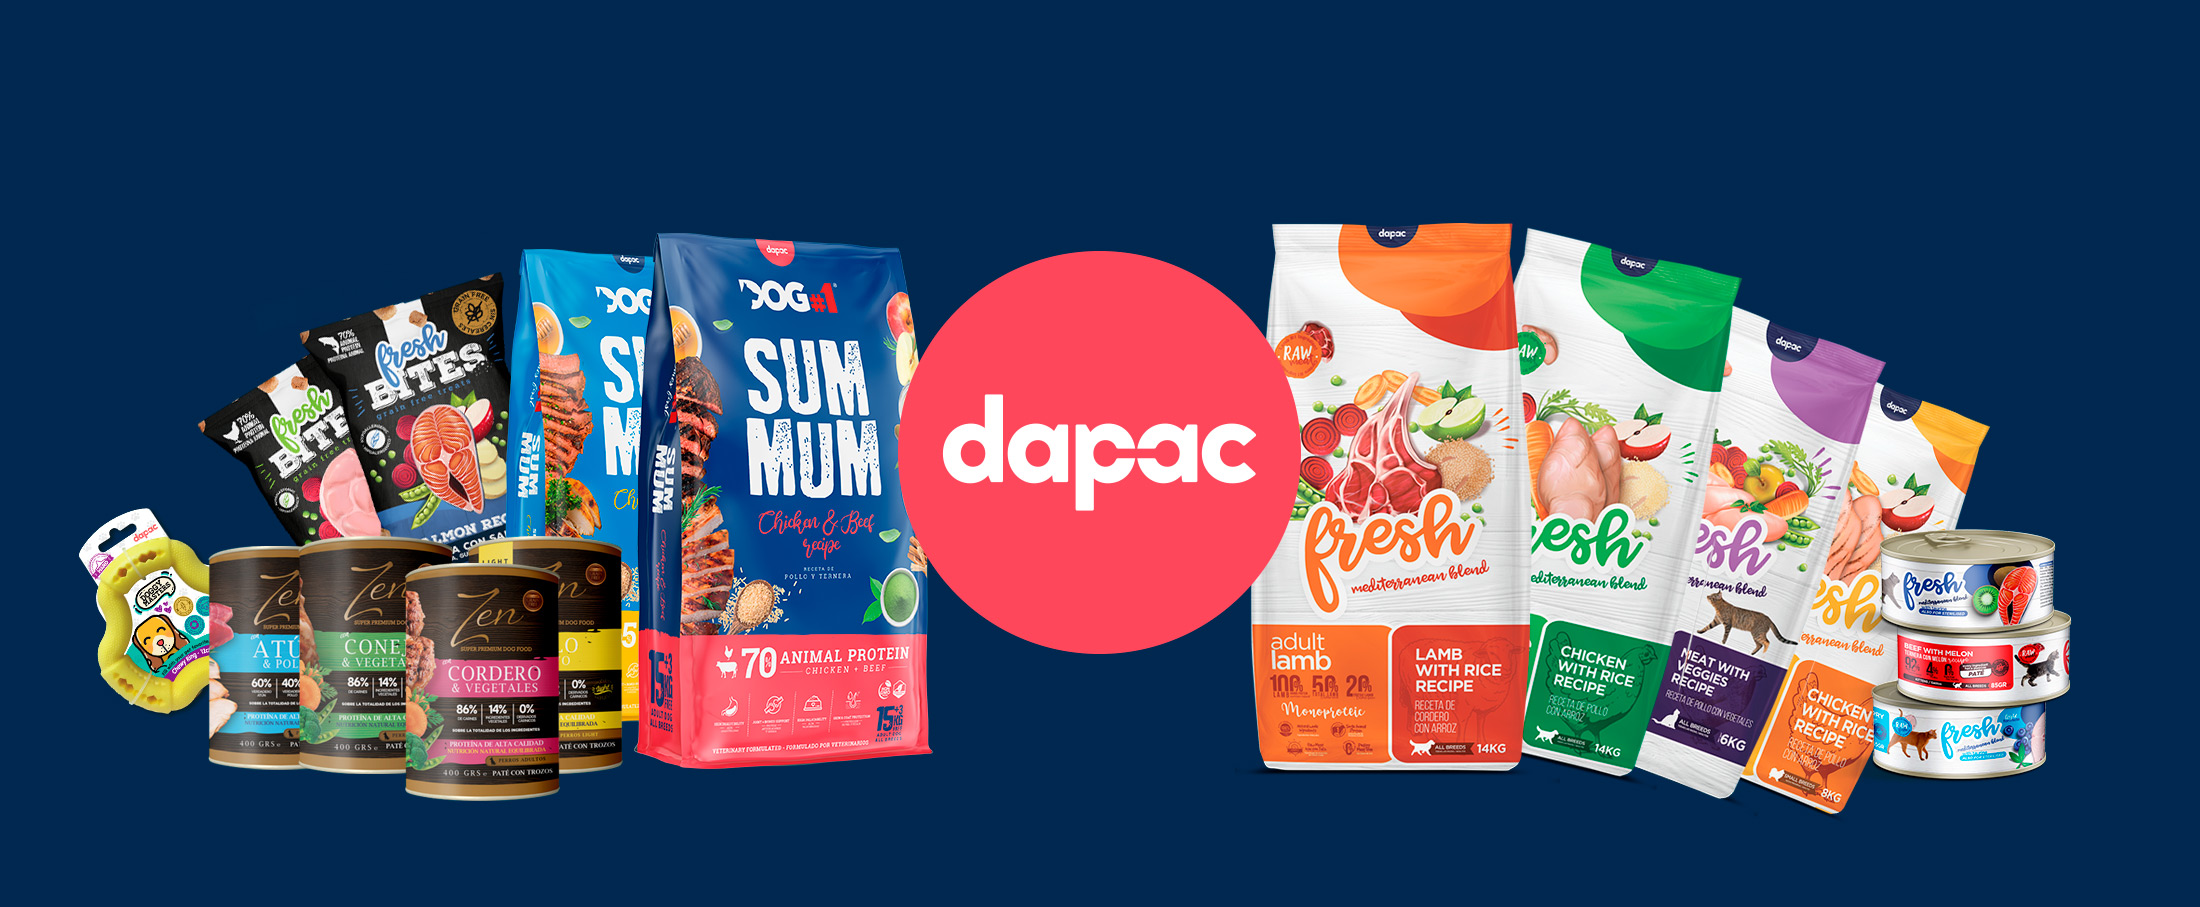 El camino al éxito de las marcas de Dapac: co-creación con Brandesign para un posicionamiento ganador